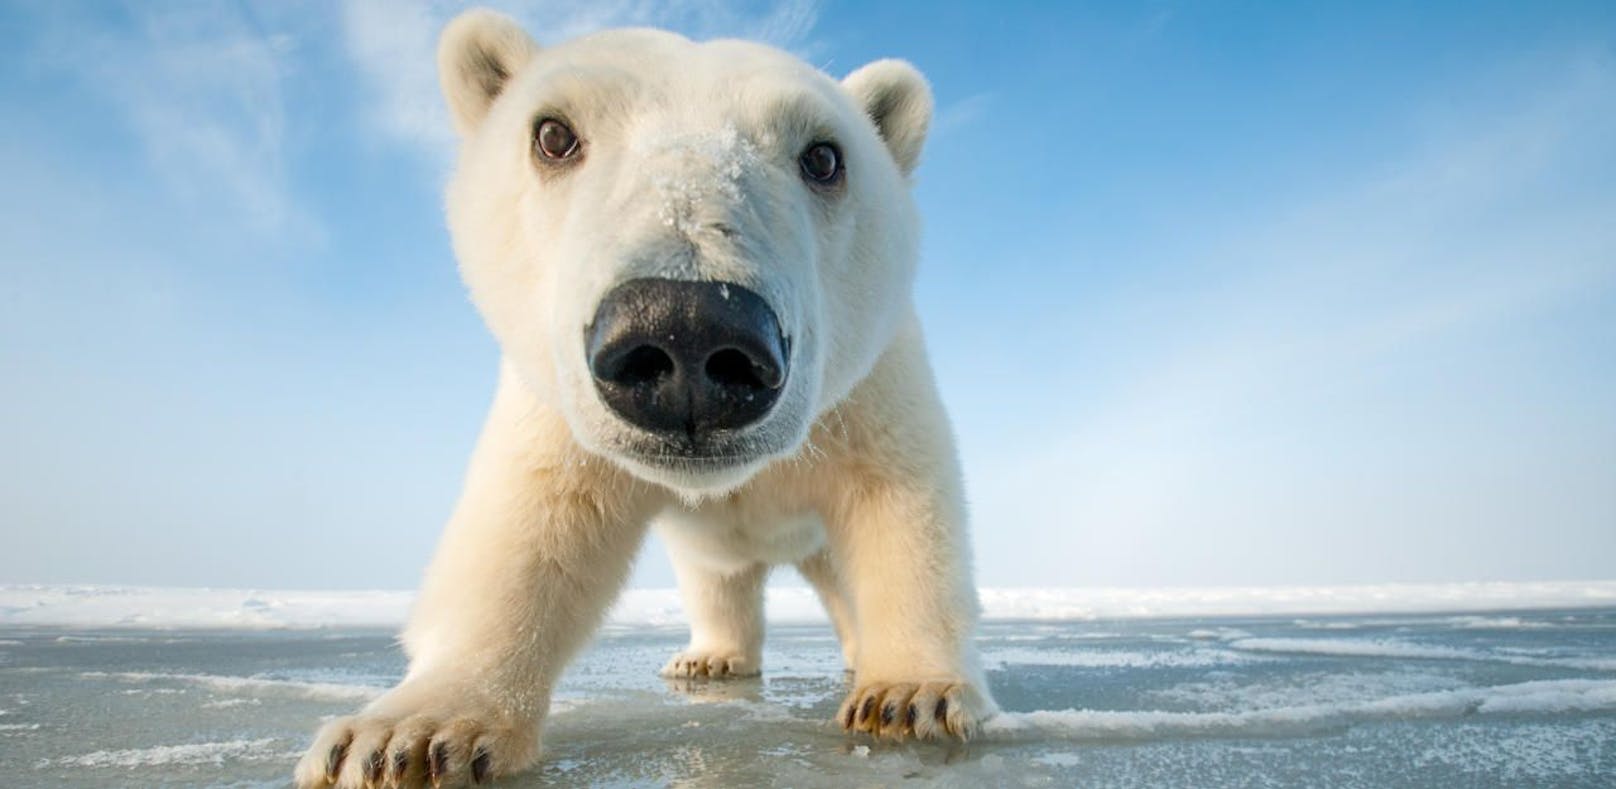 Fünf erstaunliche Fakten über Eisbären